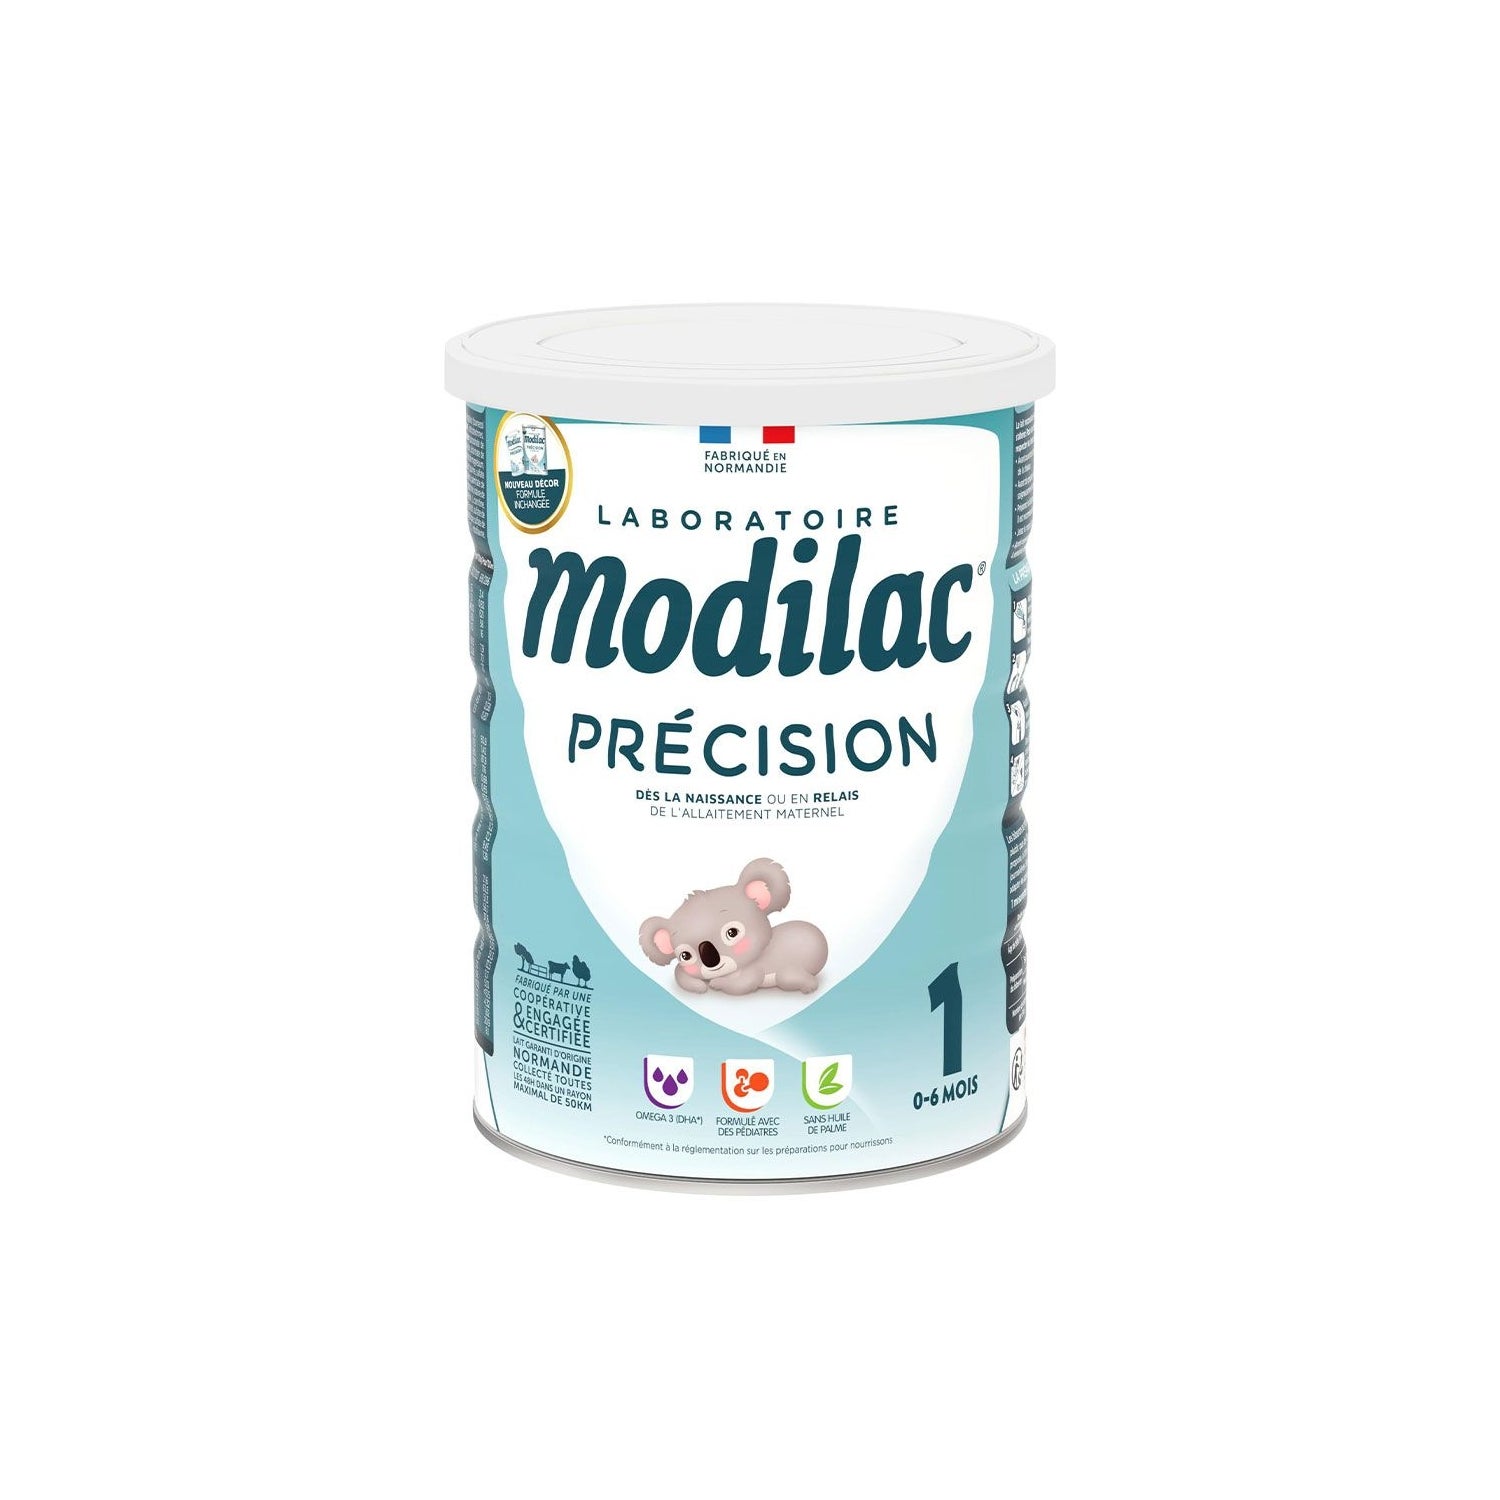 Novalac Premium 1 - Leche en polvo de Iniciación para bebes 0-6 Meses.  Contribuye al normal desarrrollo de tu Bebé. Fórmula Elaborada con  Pediatras